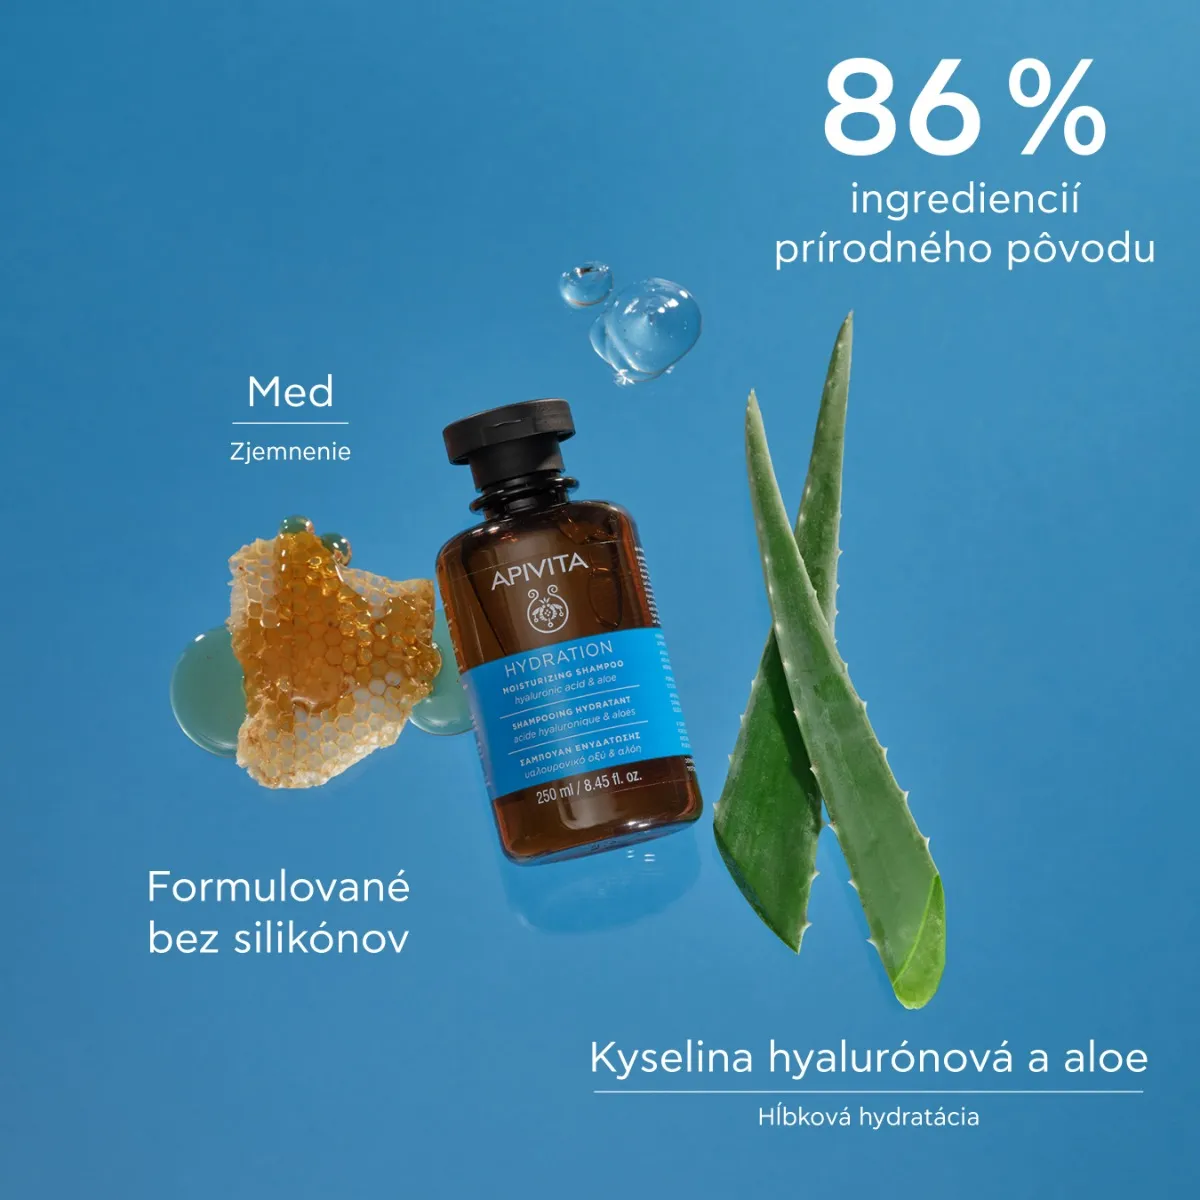 APIVITA Moisturizing Shampoo, 250ml 1×250 ml hydratačný šampón